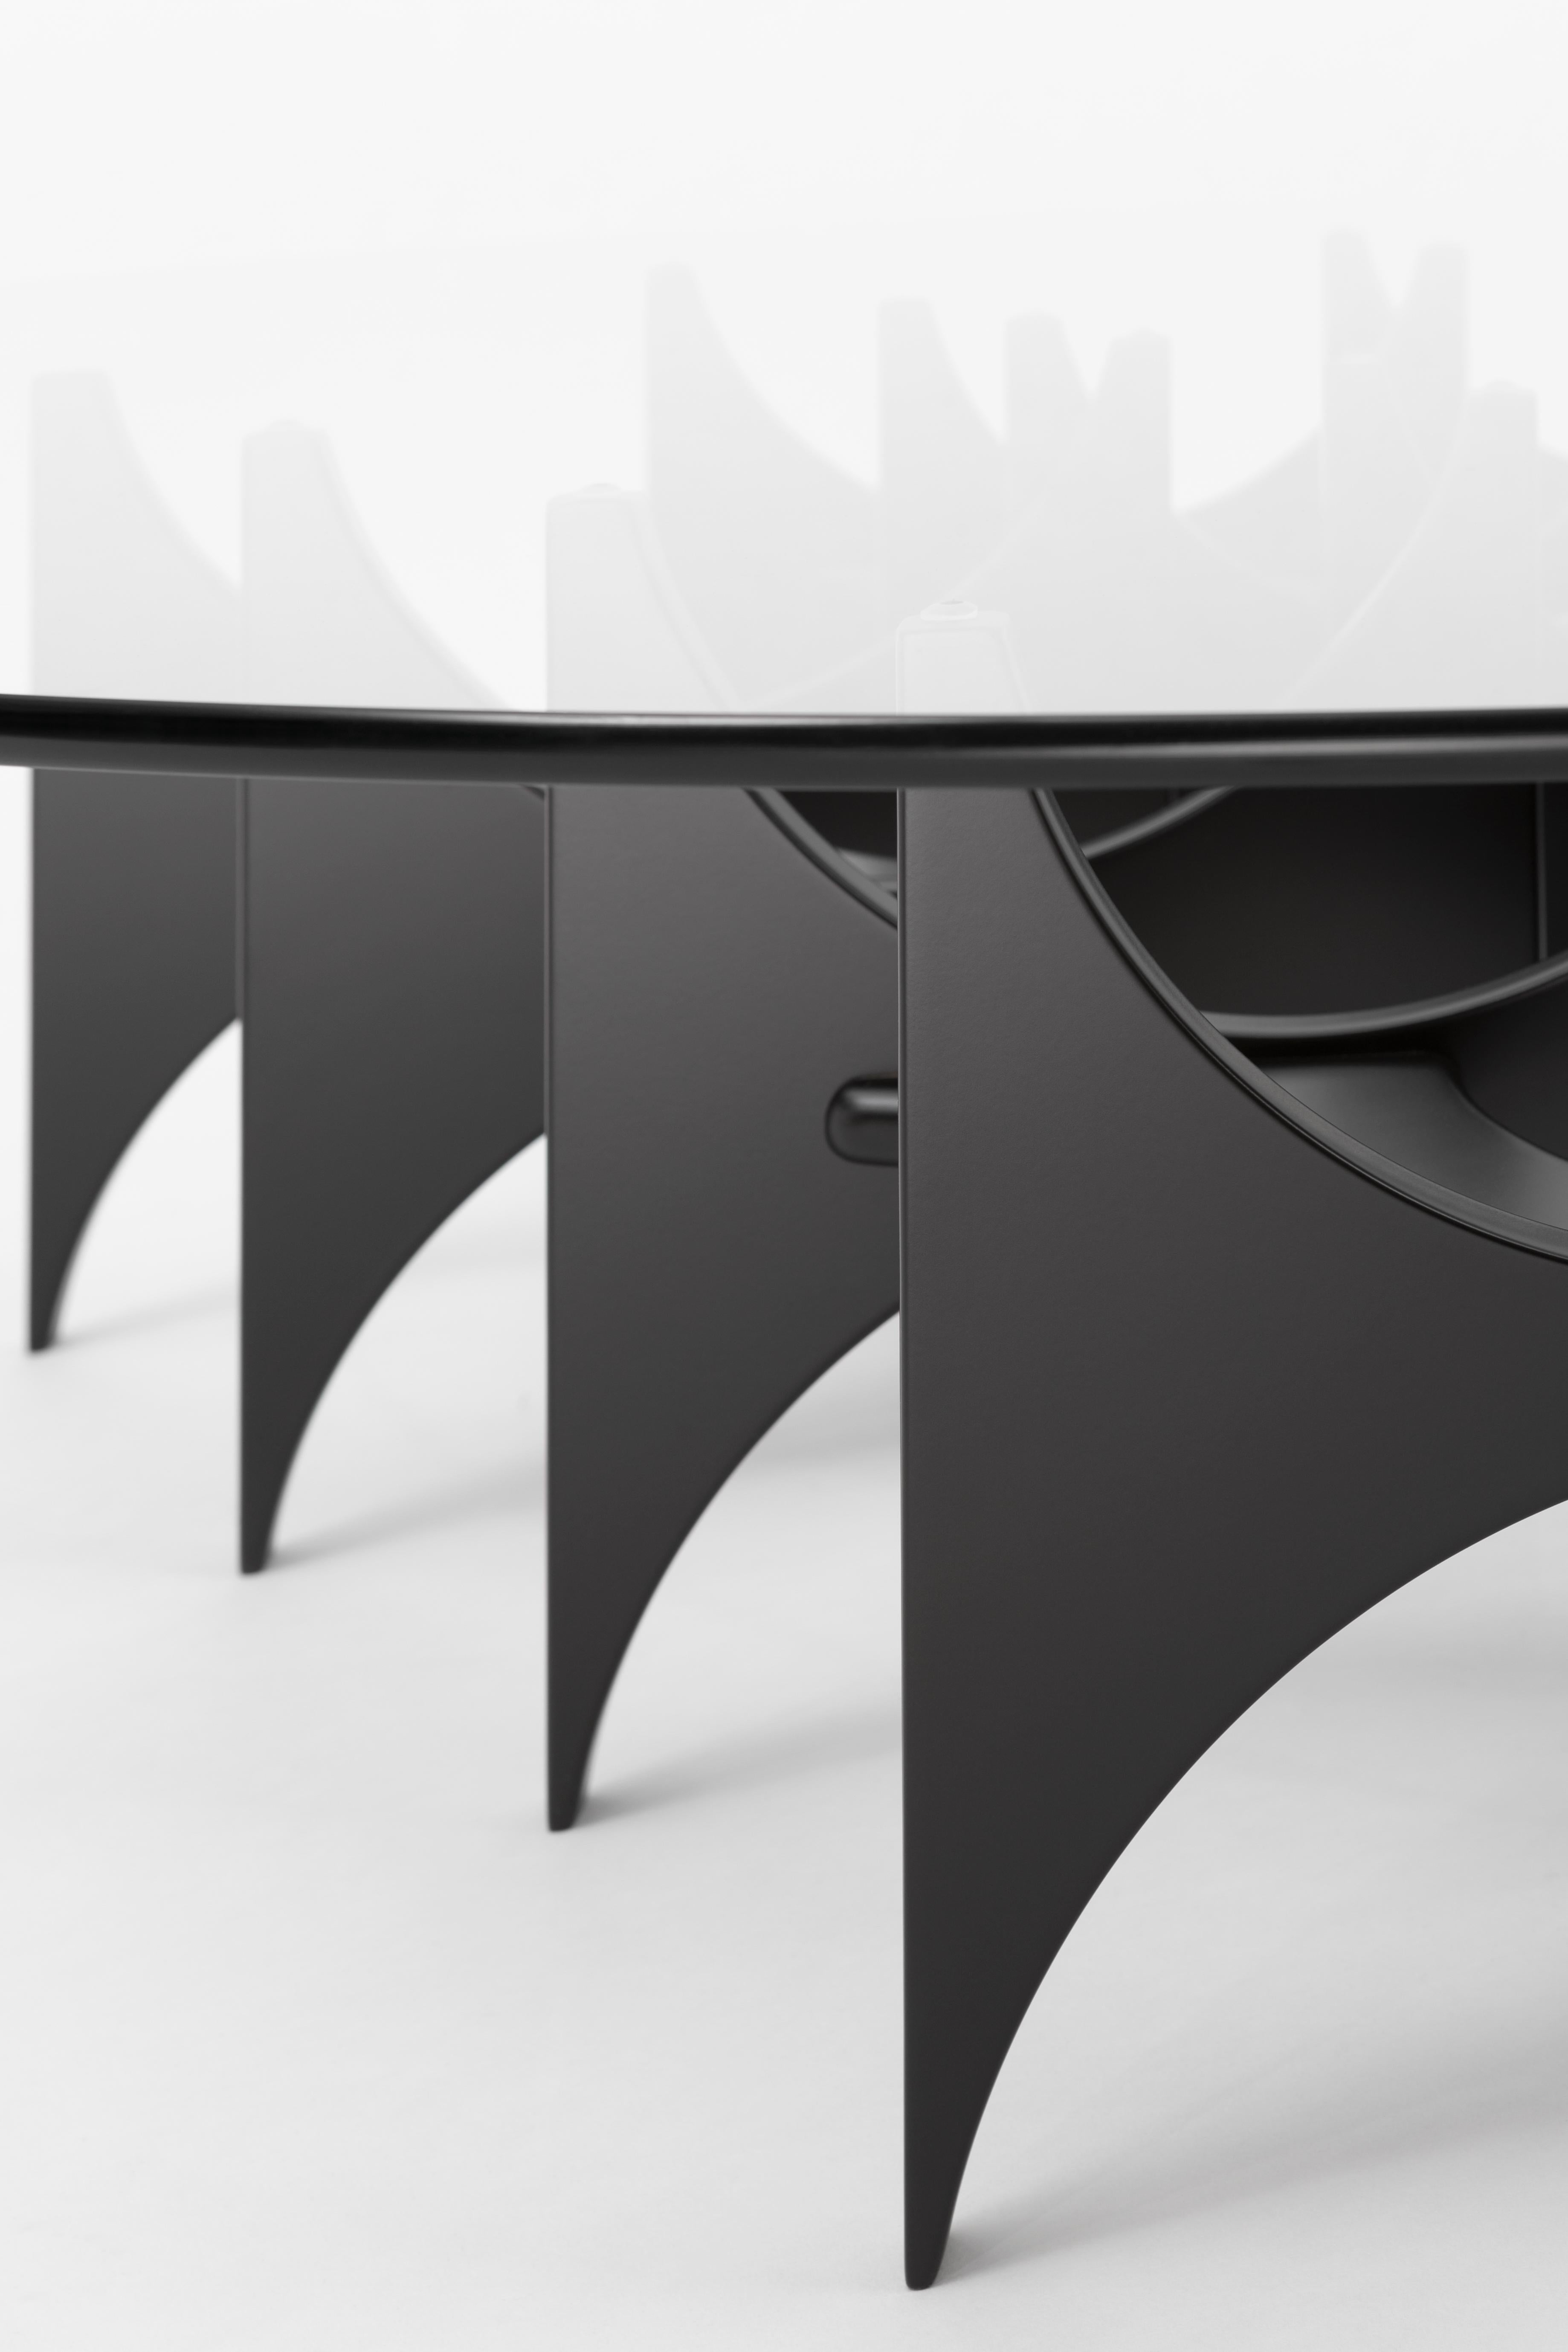 La table basse 'Butterfly' est également une nouvelle entrée dans la collection 'Paesaggio'. Hanne Peer a transposé l'esthétique biomorphique de sa console 